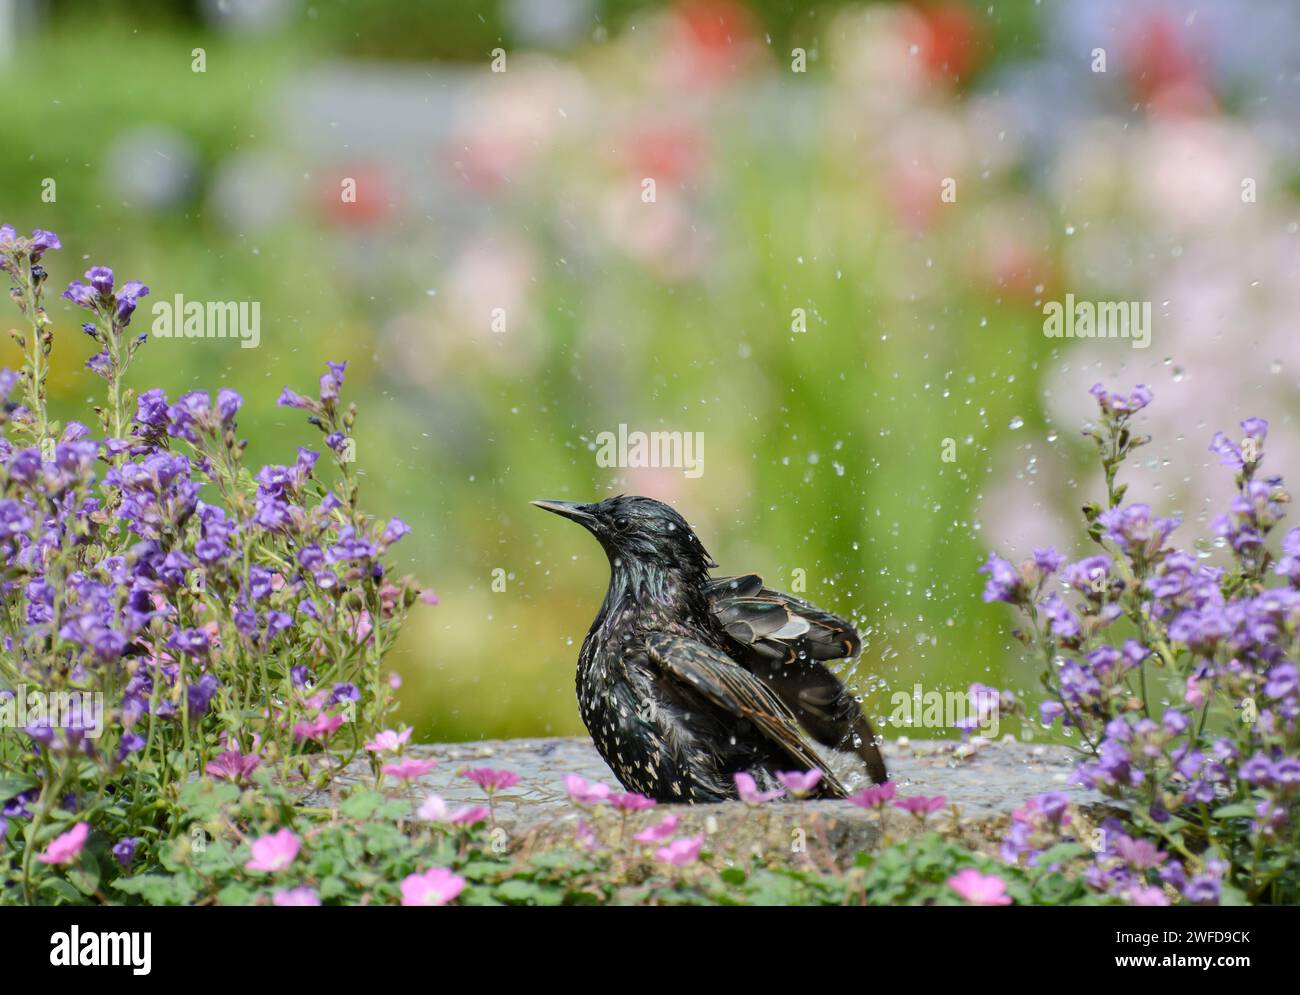 Europäischer Starling Sturnus vulgaris, Baden im Garten Vogelbad mit blühenden Pflanzen, Juni. Stockfoto